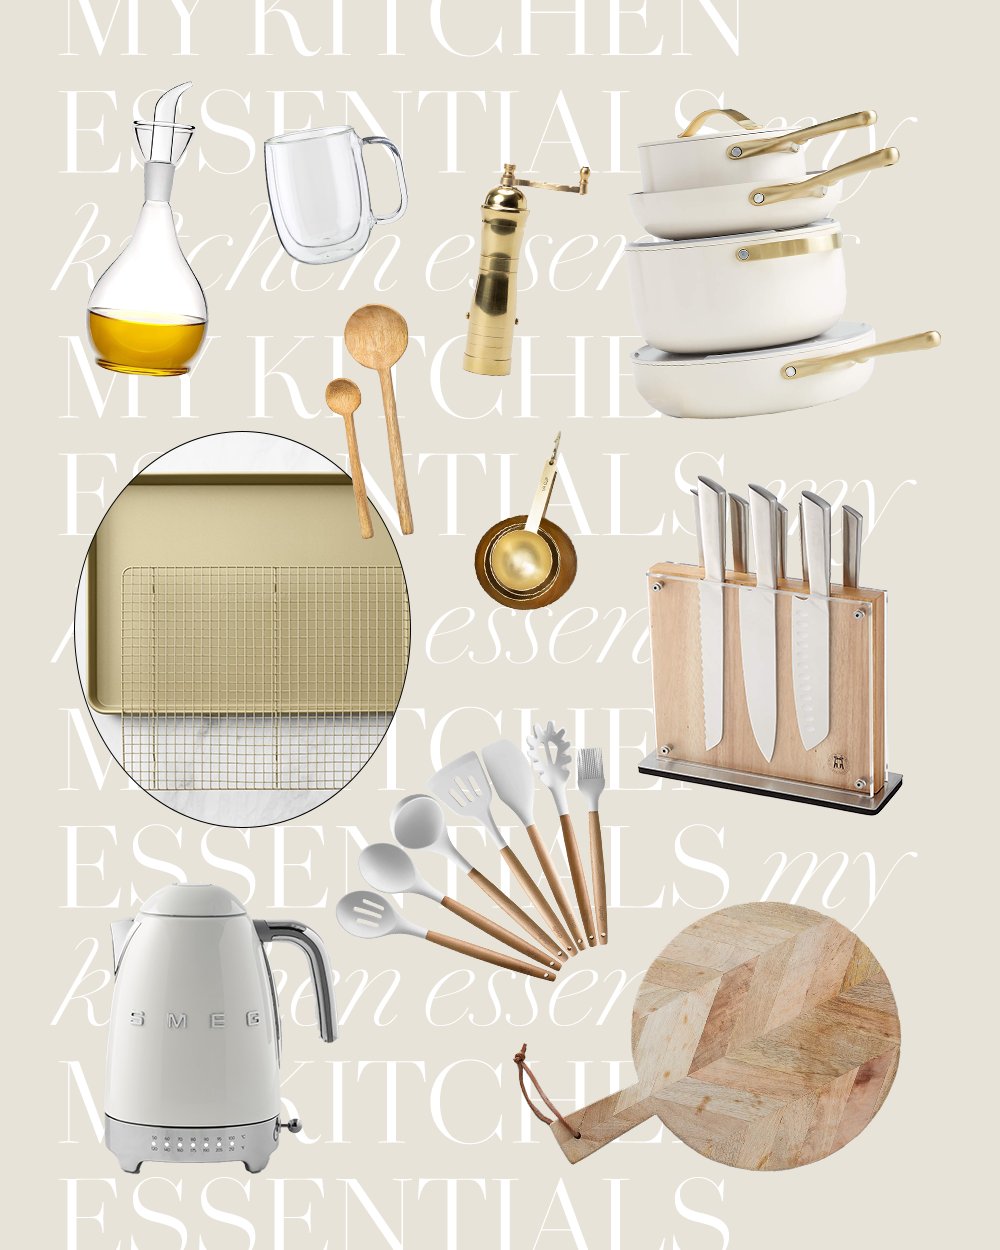 Arielle Lorre on X: Here are my kitchen essentials:    / X